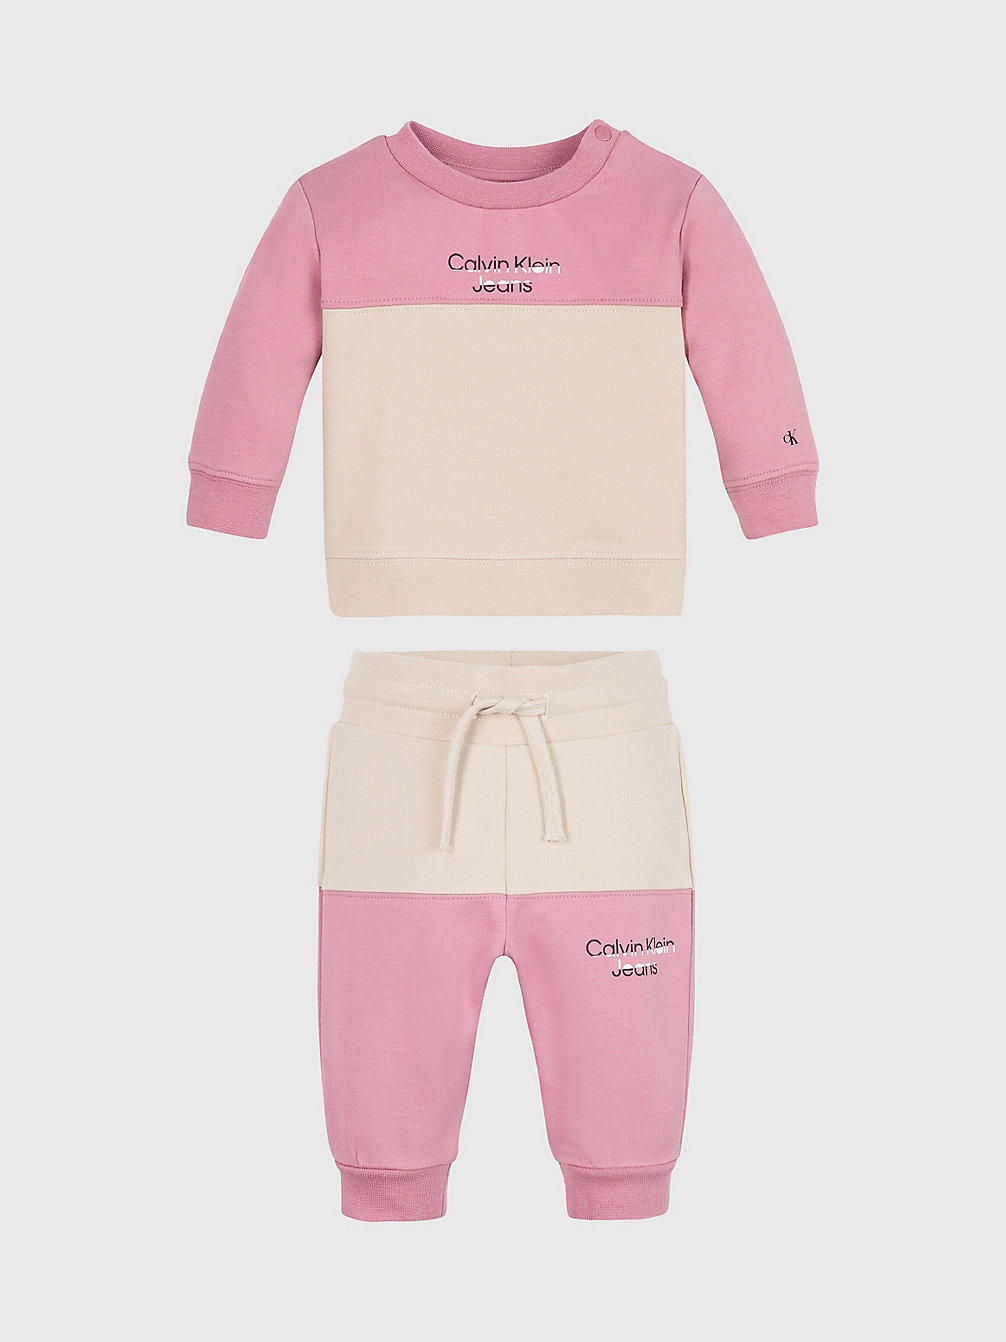 FOXGLOVE > Baby-Trainingsanzug Im Blockfarben-Design > undefined newborn - Calvin Klein